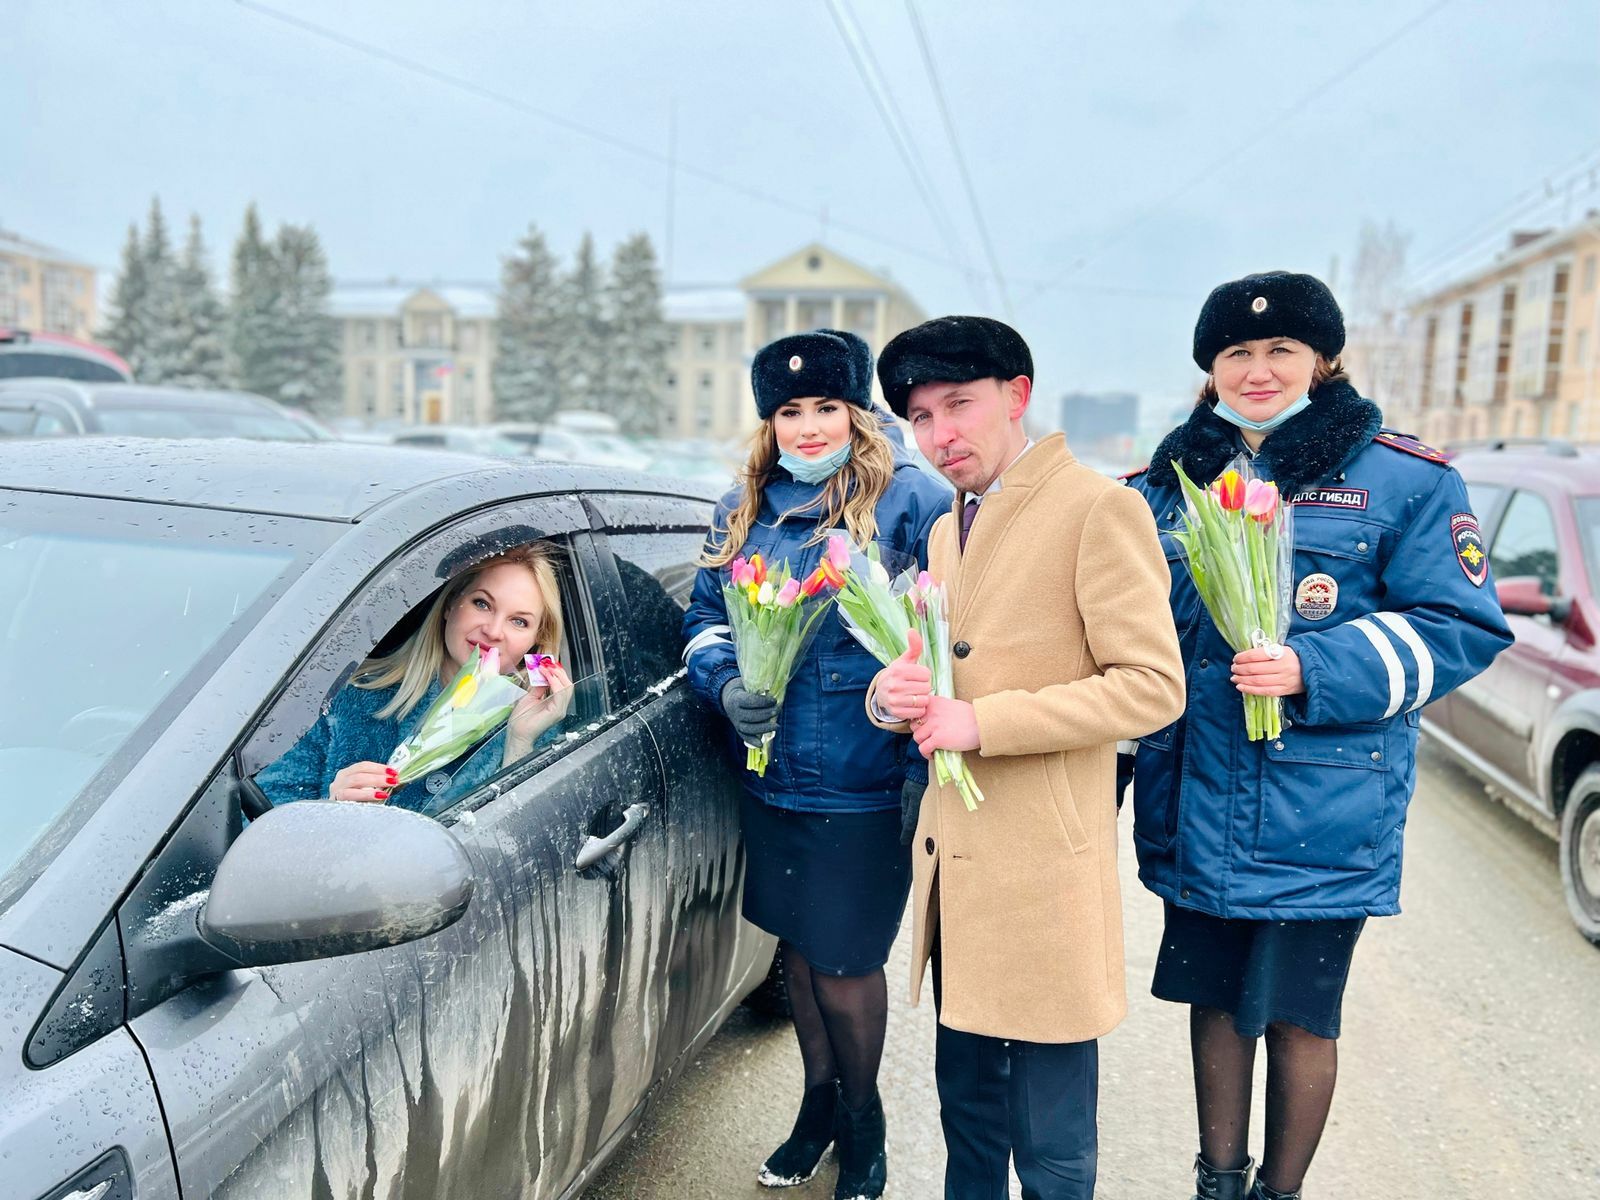 В Альметьевске сотрудники ГИБДД поздравили автоледи с праздником и вручили тюльпаны